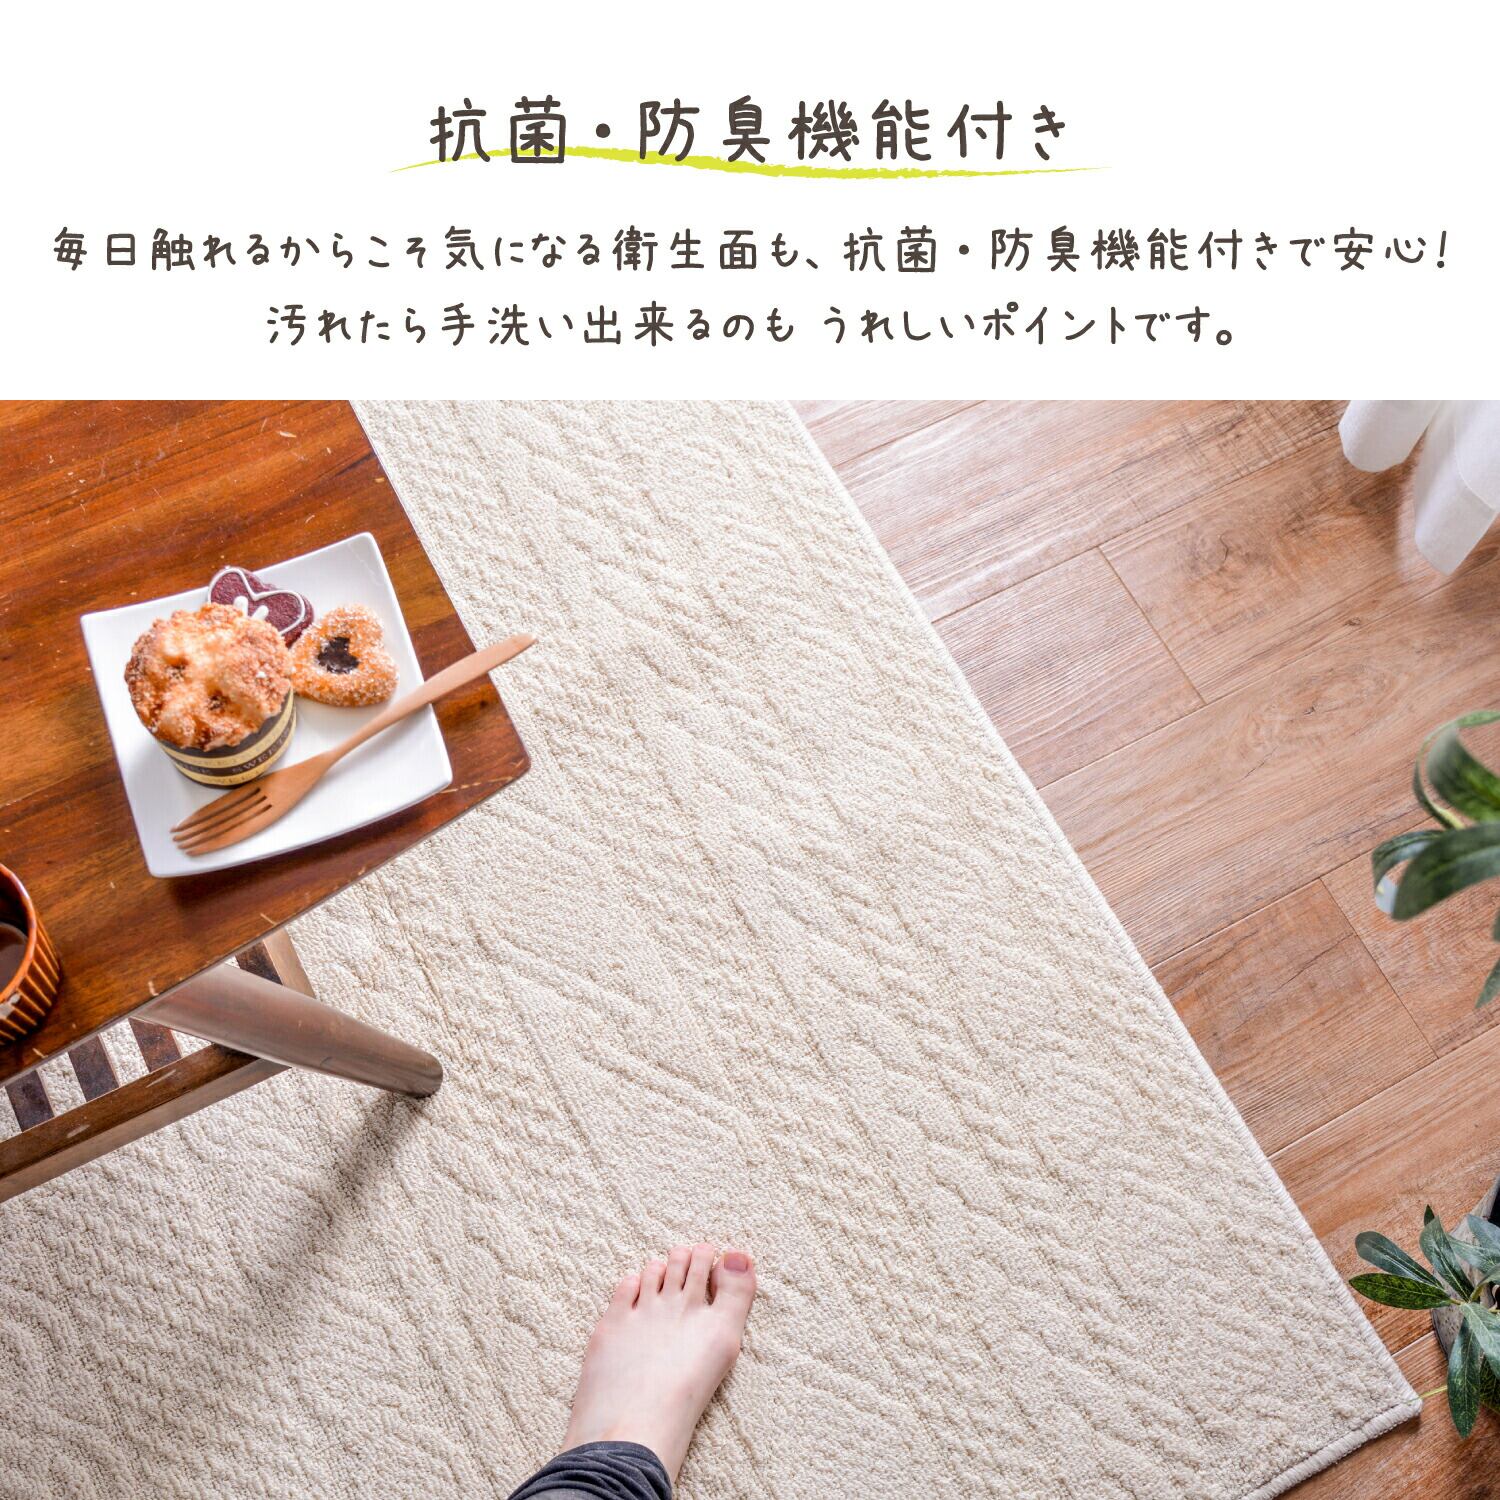 ラグ マット 綿100％の日本製ラグ ソリッド 185×240cm タフトラグ